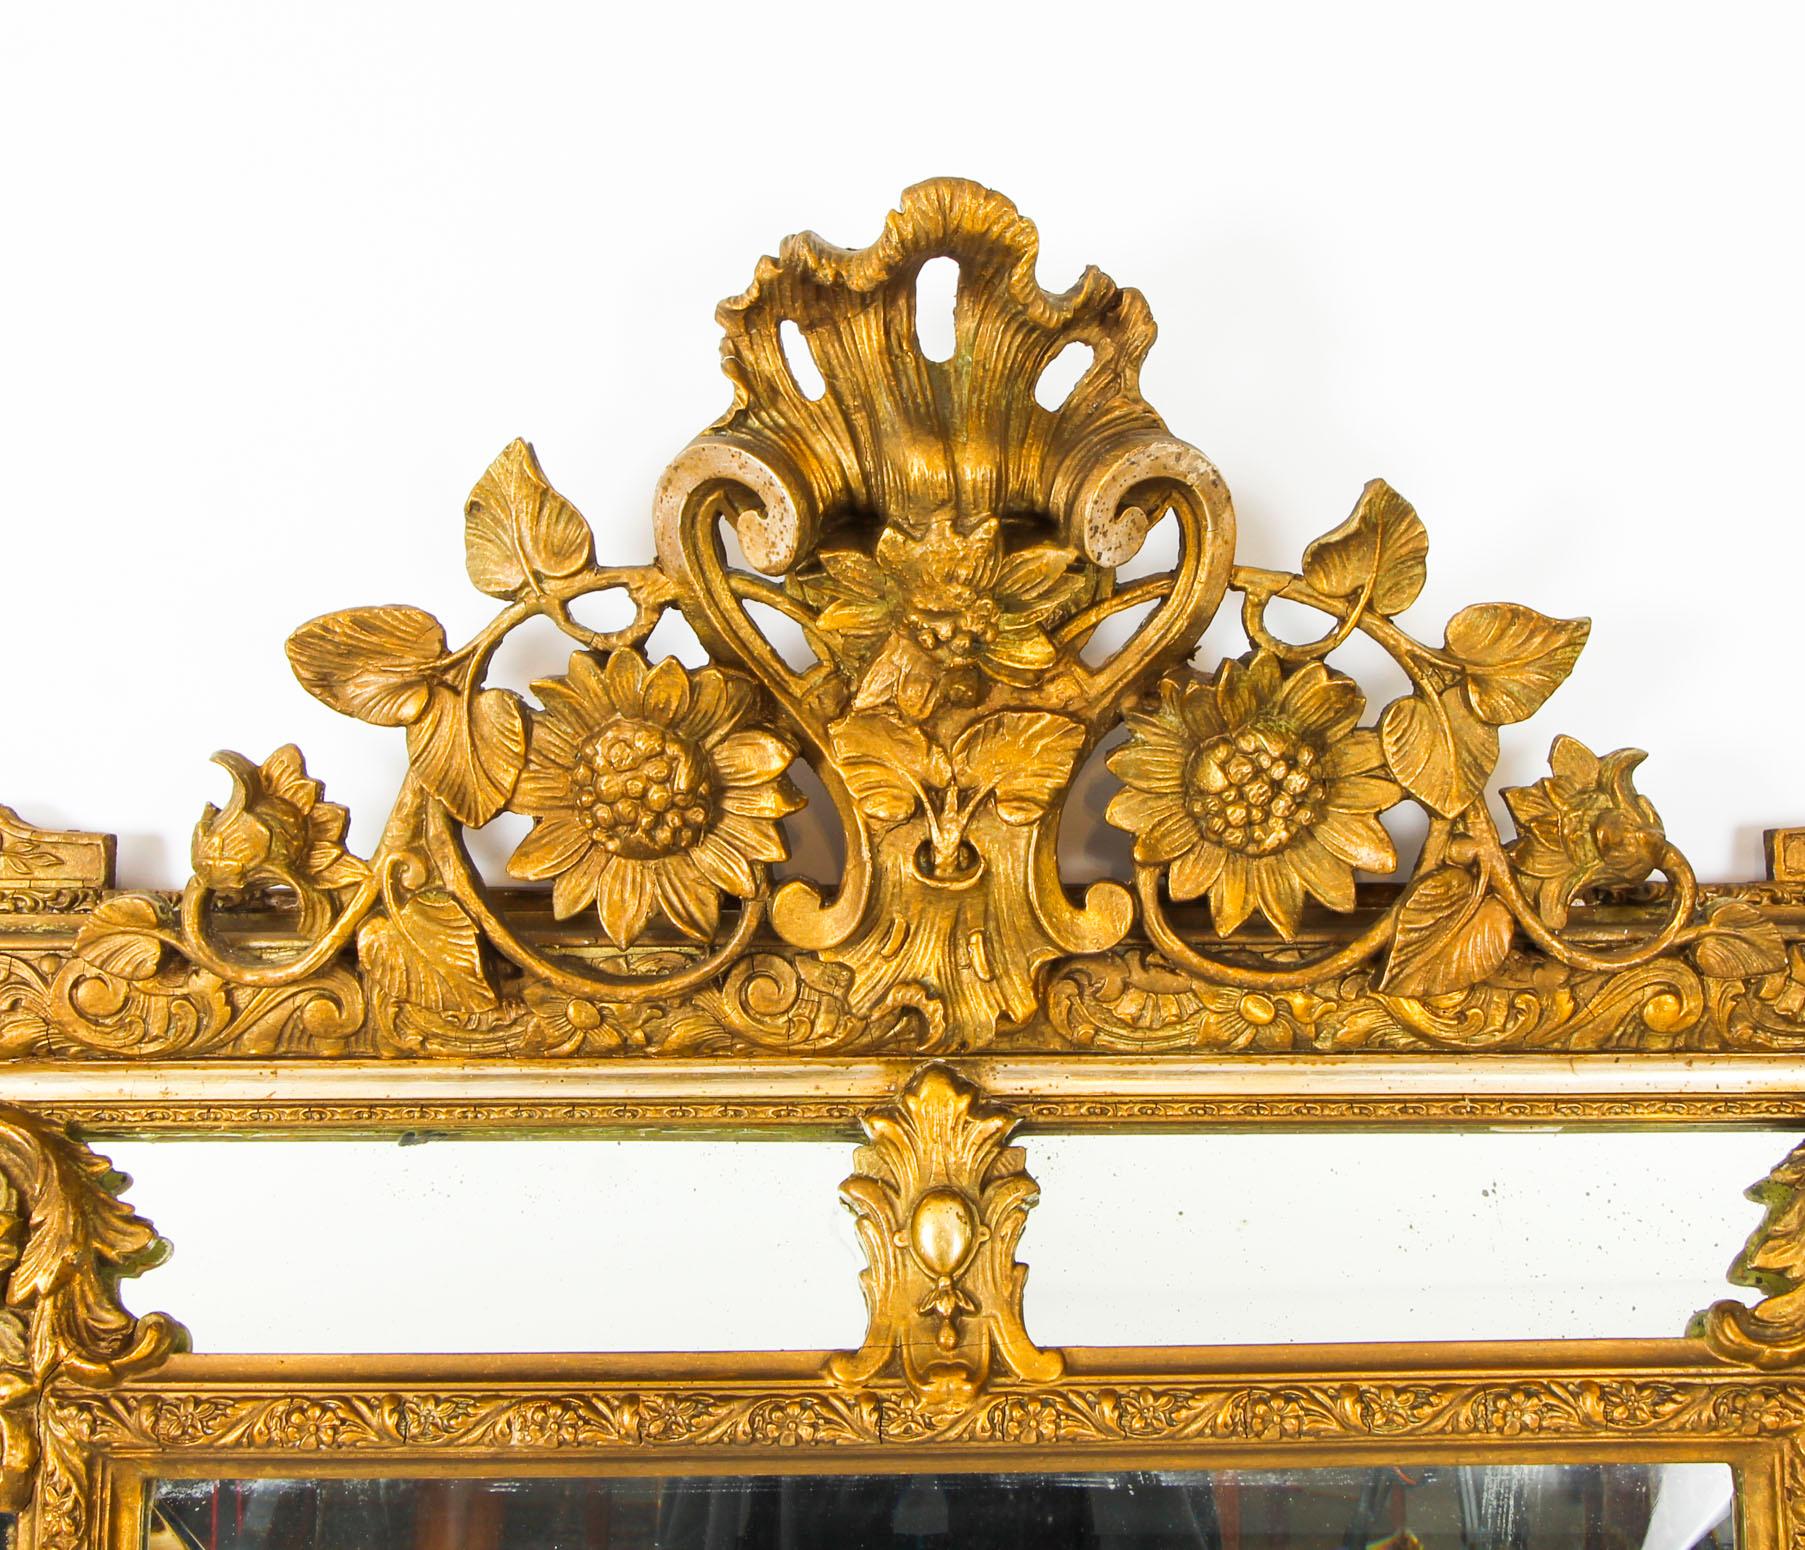 Dies ist ein prächtiger antiker französischer Louis-Revival-Spiegel aus vergoldetem Holz aus der Zeit um 1860.

Die abgeschrägte, rechteckige Spiegelplatte wird von seitlichen Randplatten eingerahmt. Es hat einen reich geschnitzten, mit